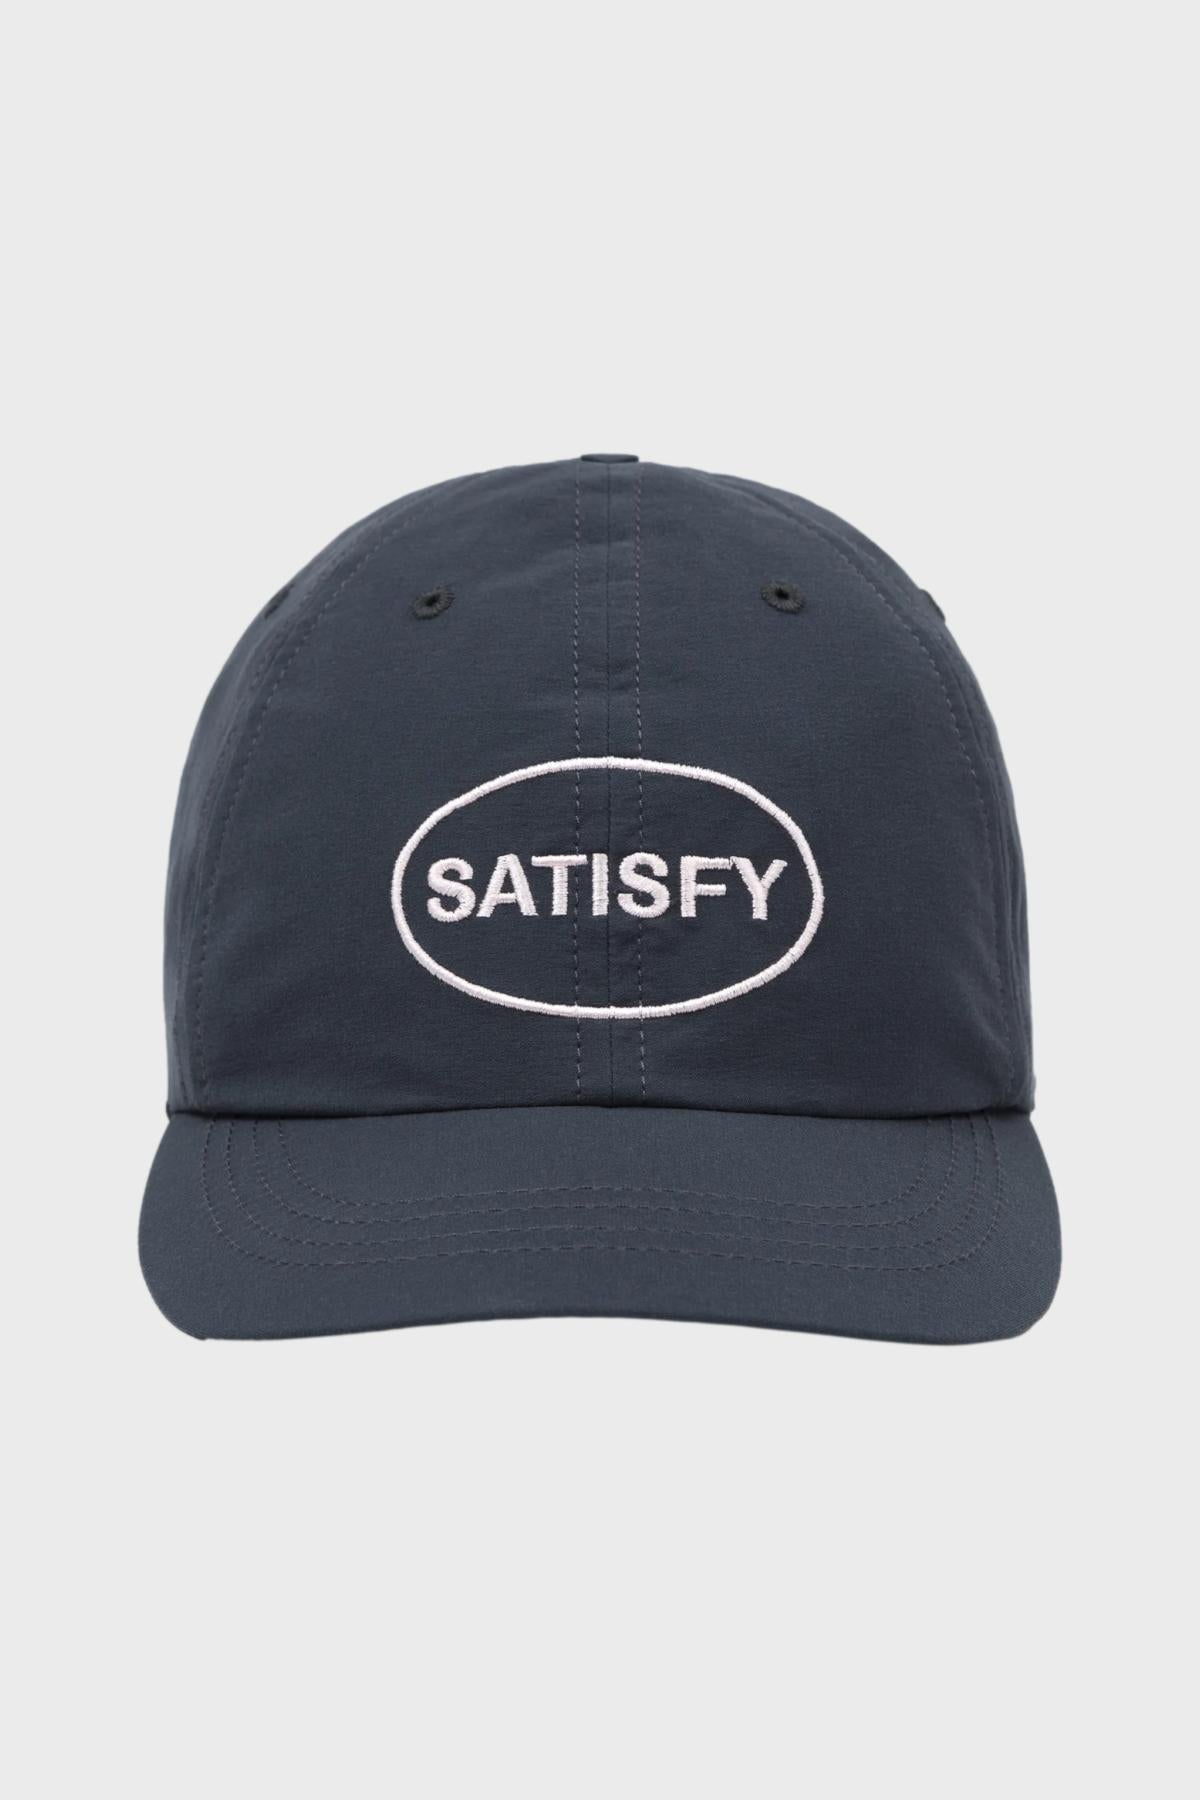 SATISFY - PEACESHELL RUNNING CAP